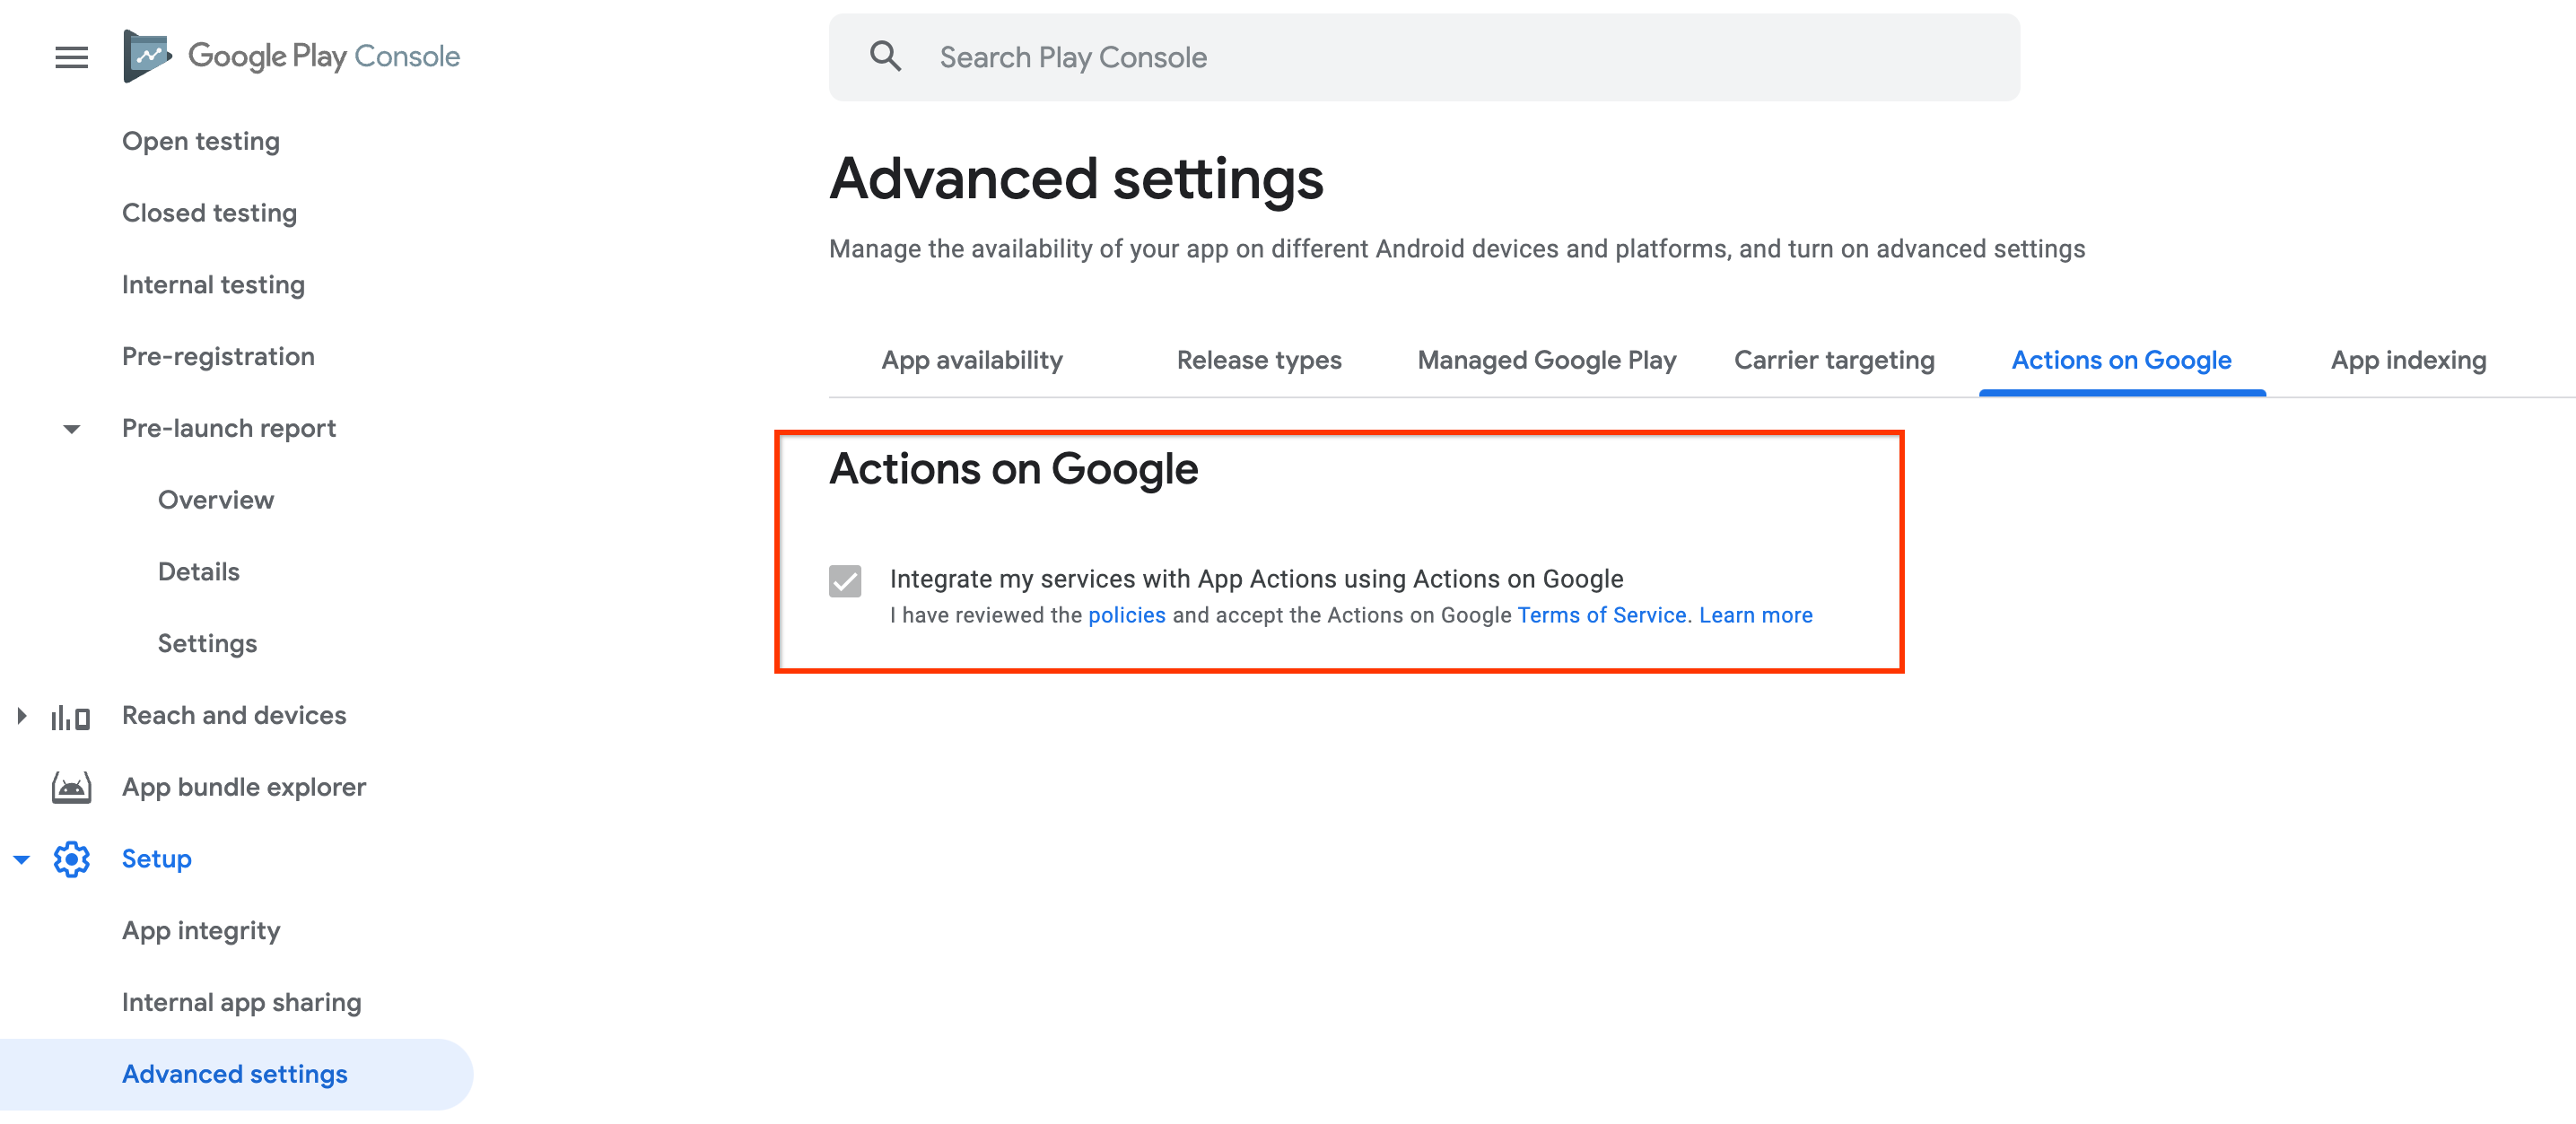 Condiciones del Servicio de Actions on Google en Google Play Console.